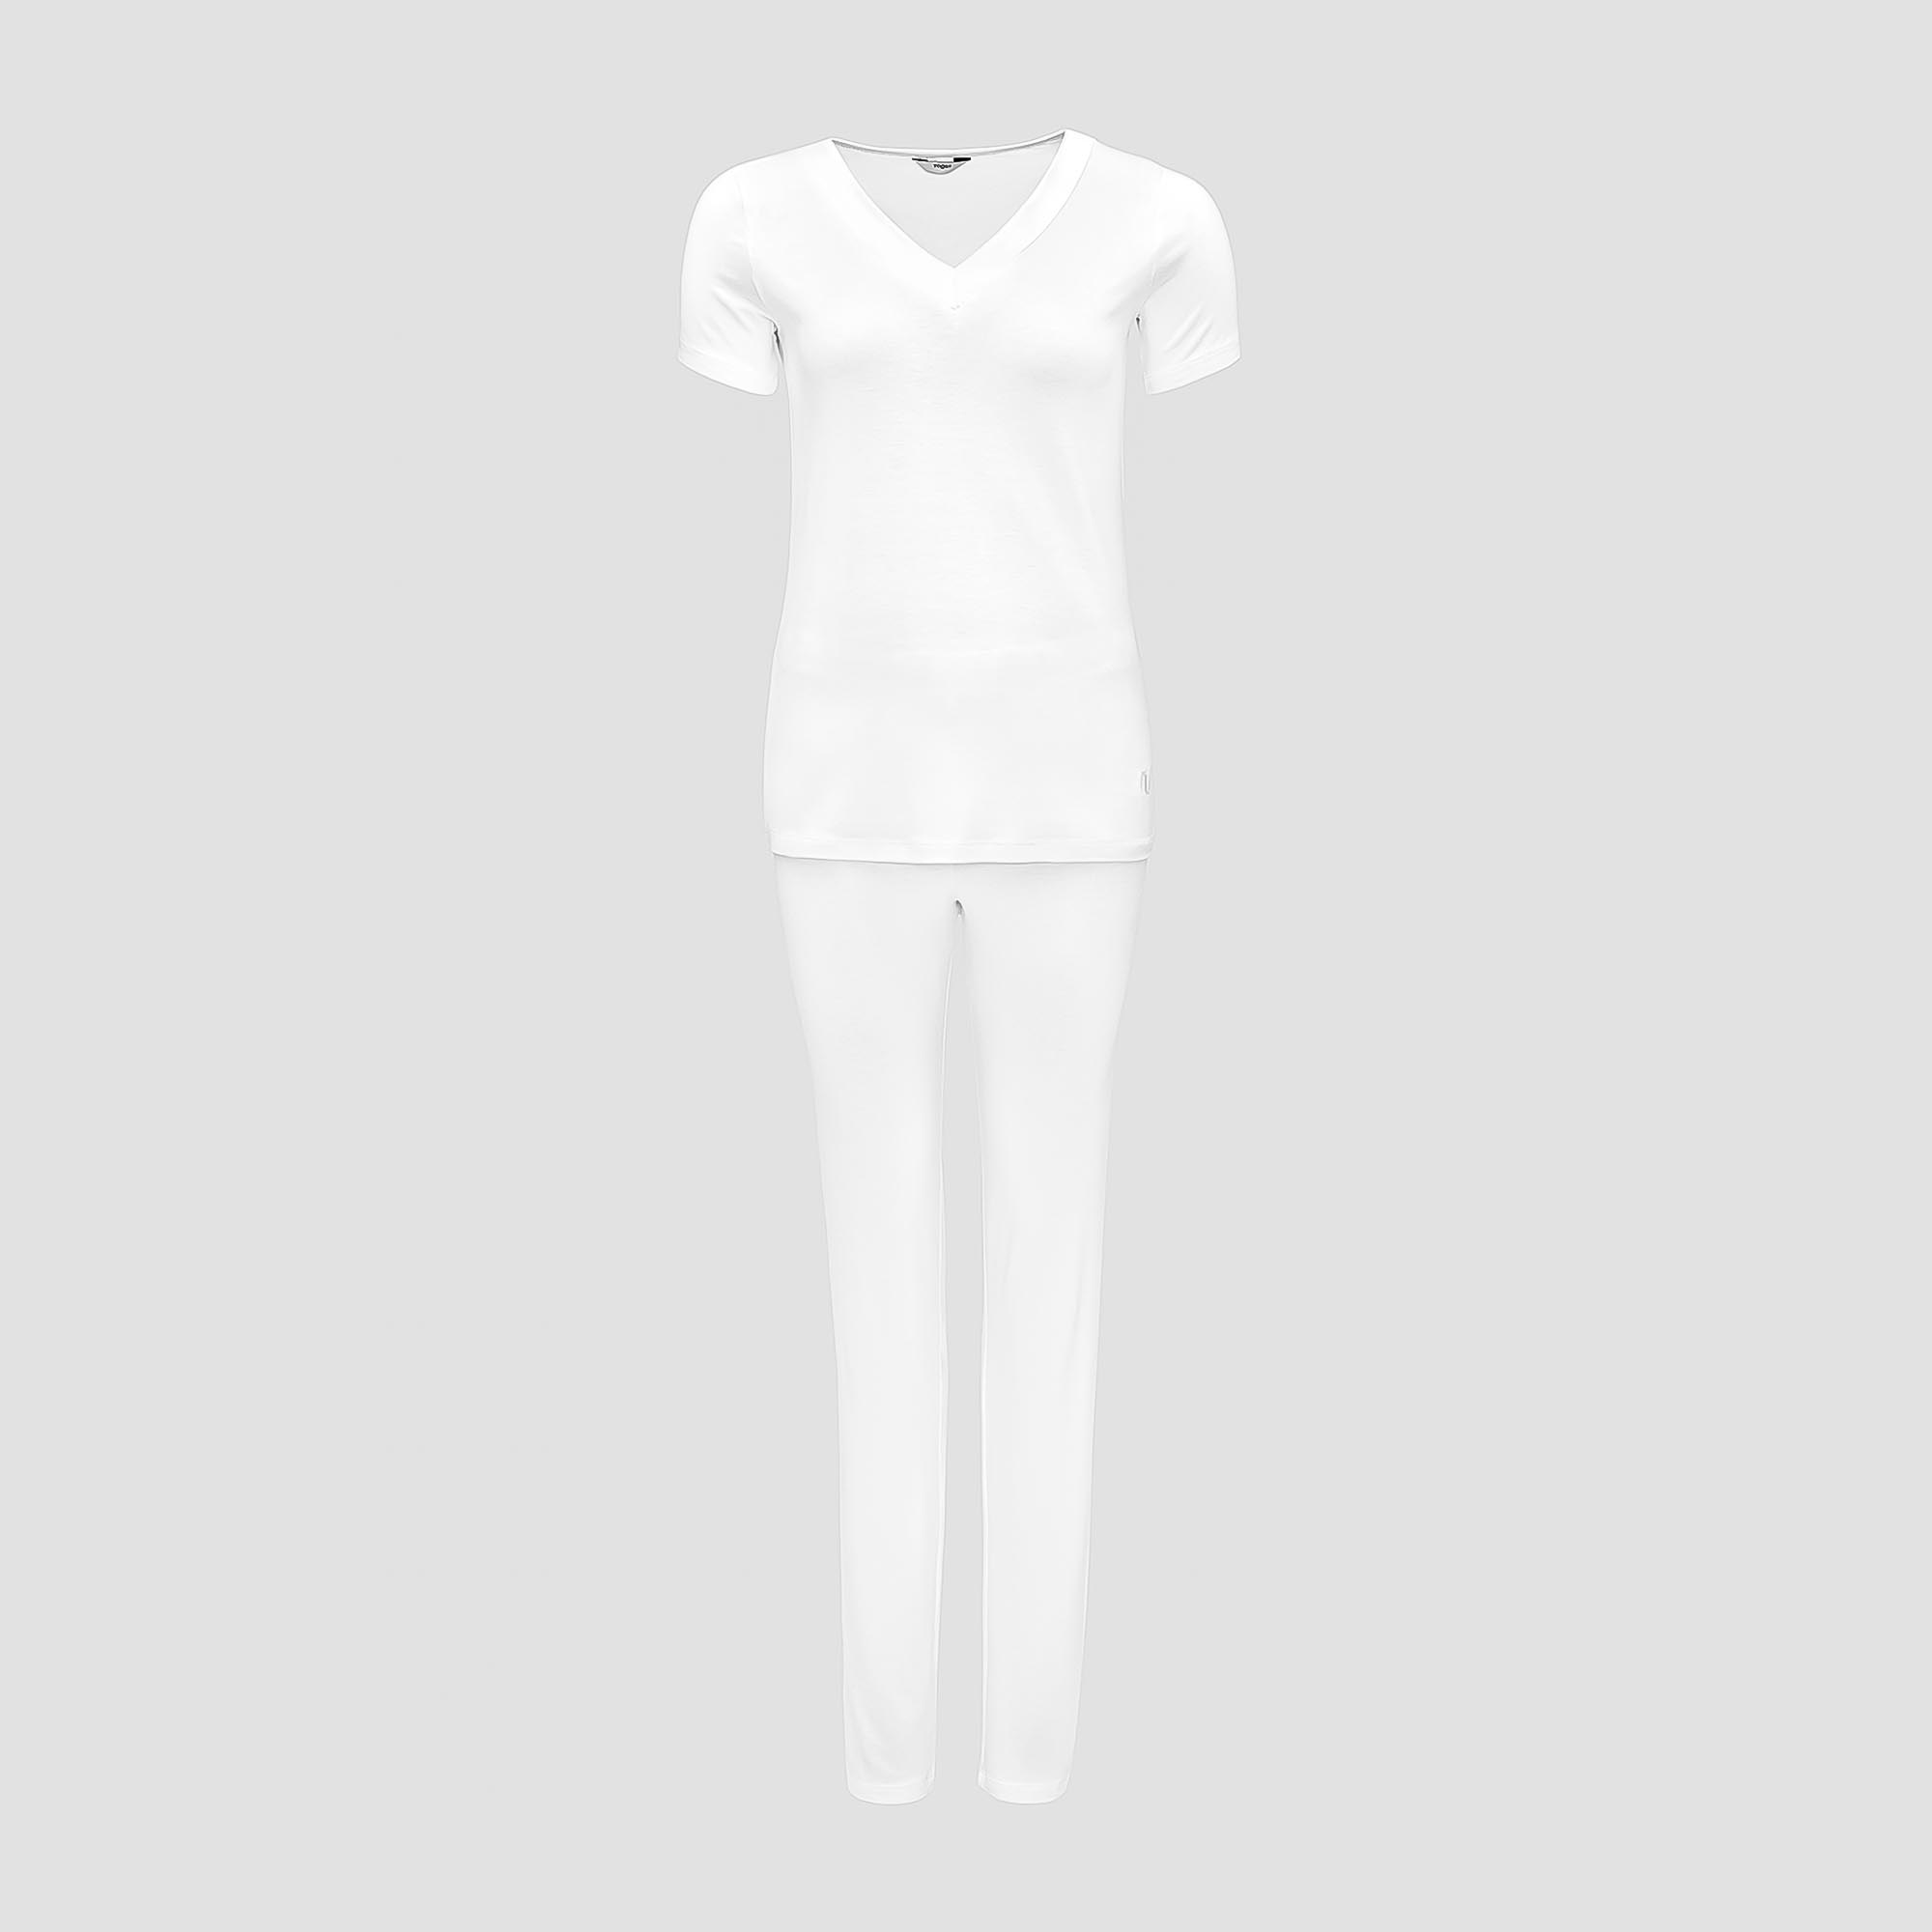 Пижама Togas Ингелла белая женская XL(50) 2 предмета жен пижама с шортами инь янь белый р 46